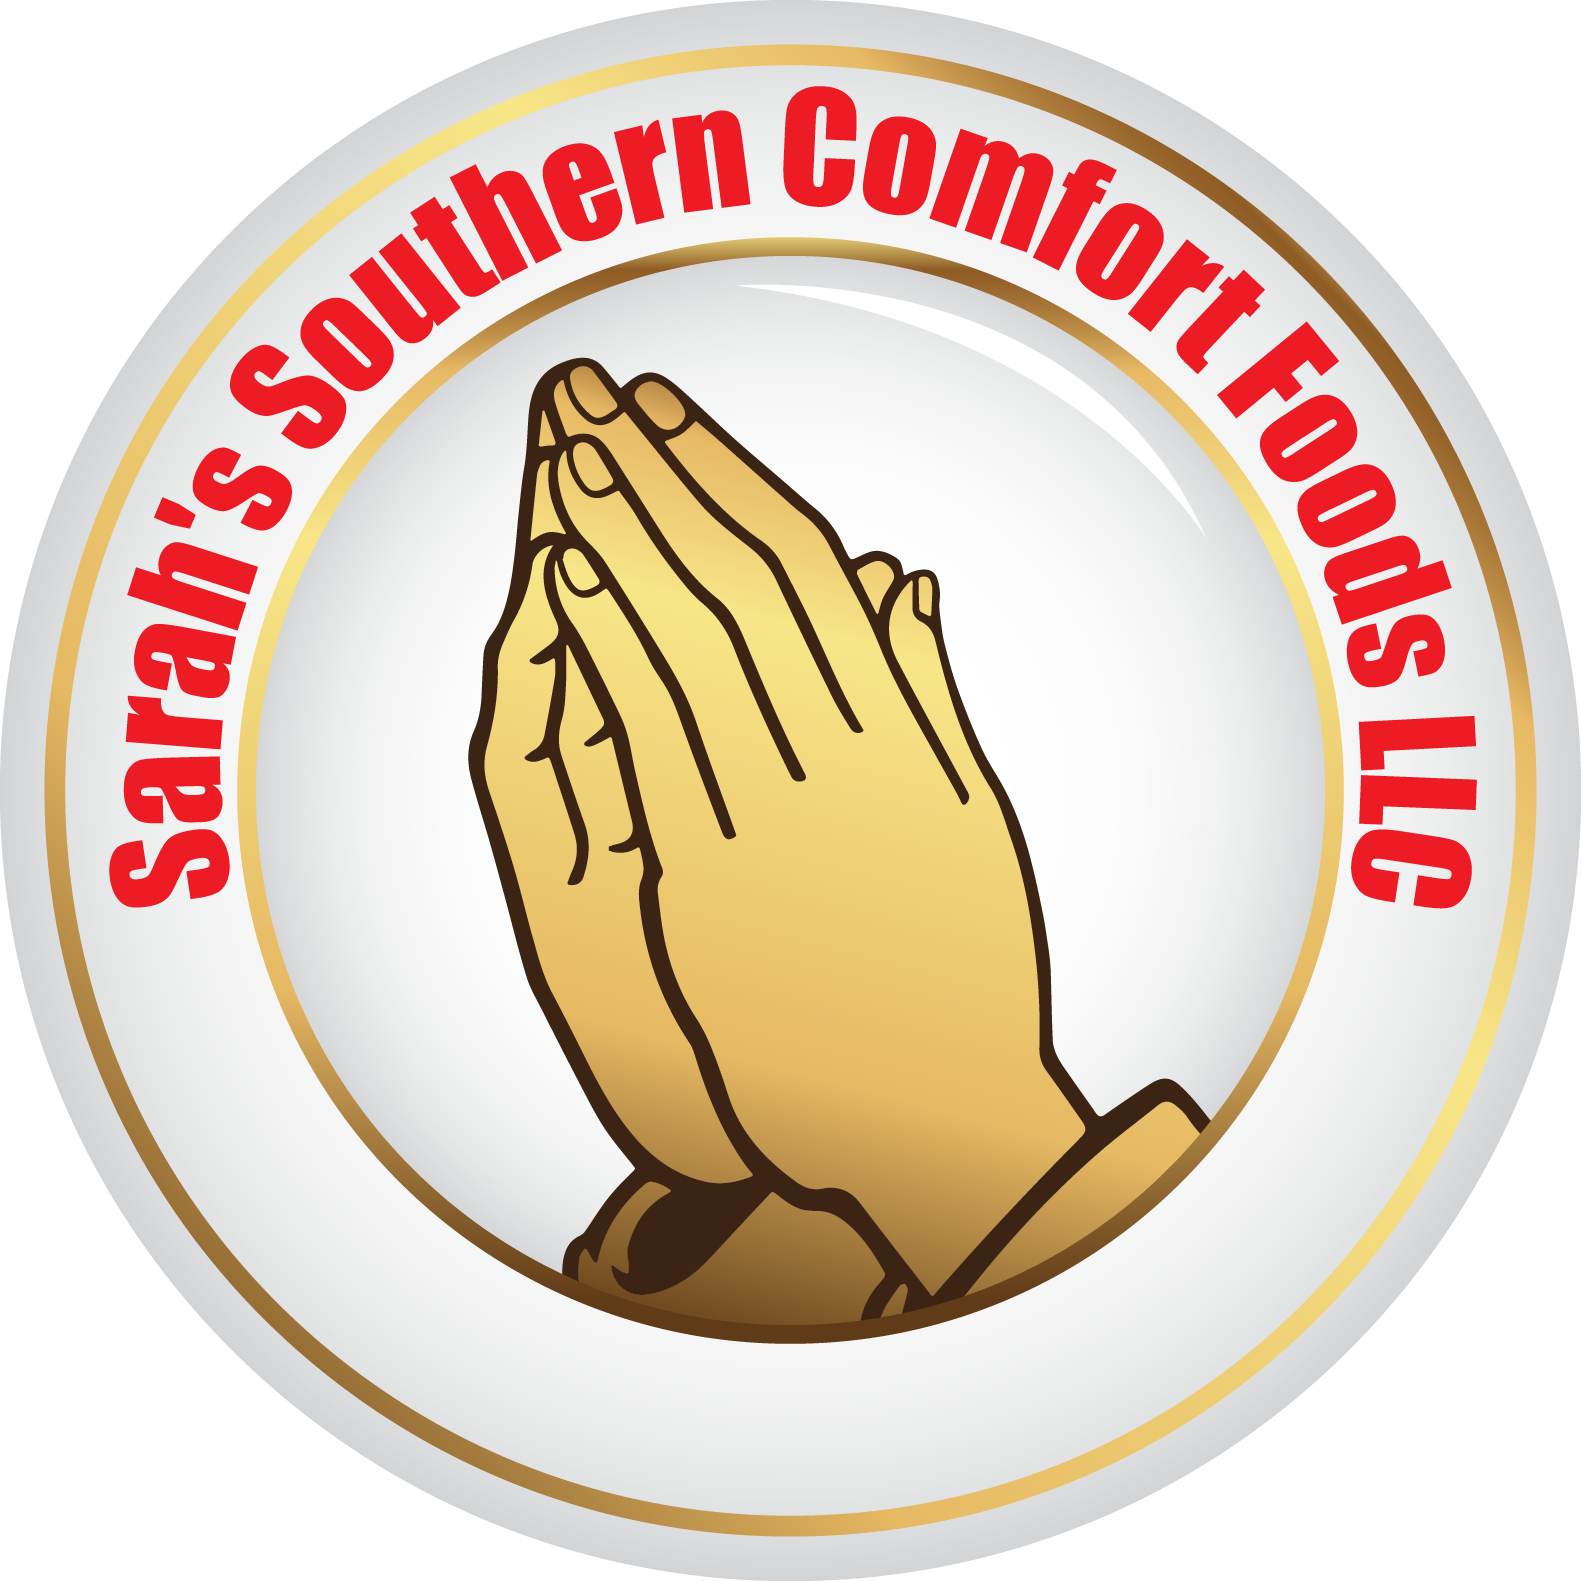 Sarah's Southern Comfort Foods